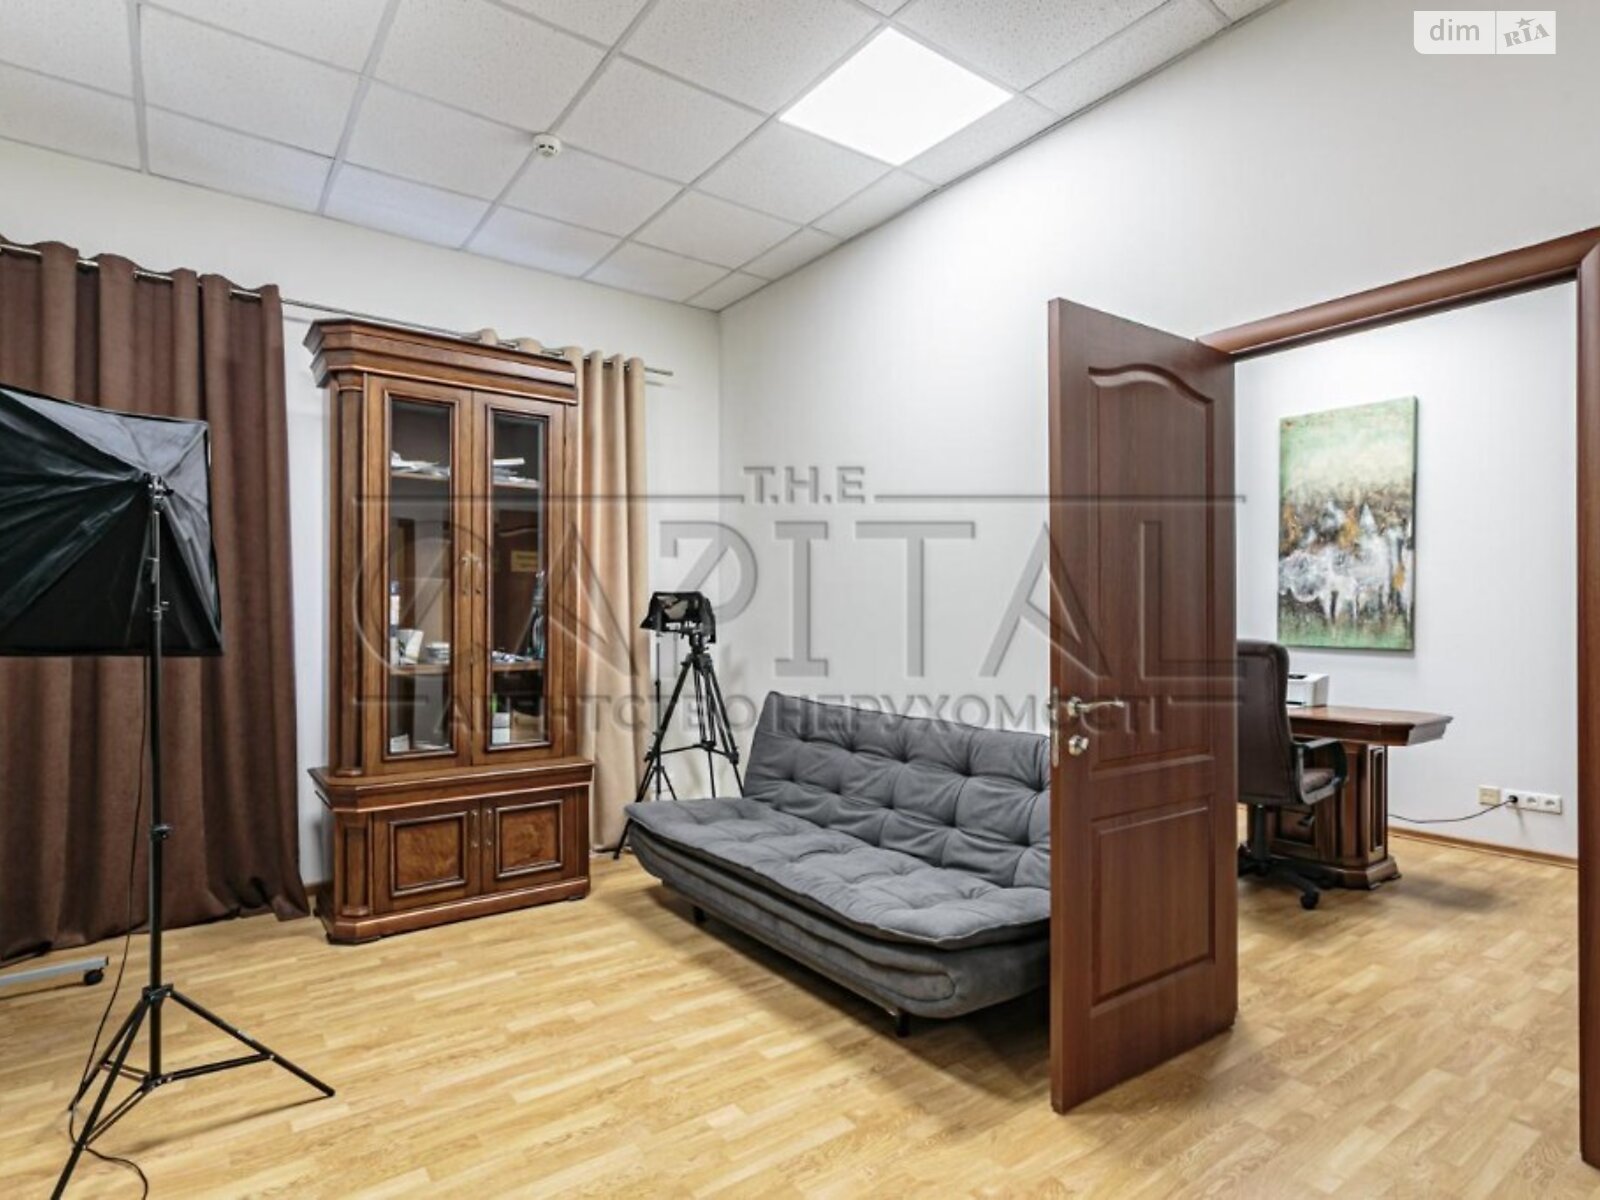 Аренда офисного помещения в Киеве, Берестейское (Брест-Литовское) шоссе 1, помещений - 15, этаж - 3 фото 1